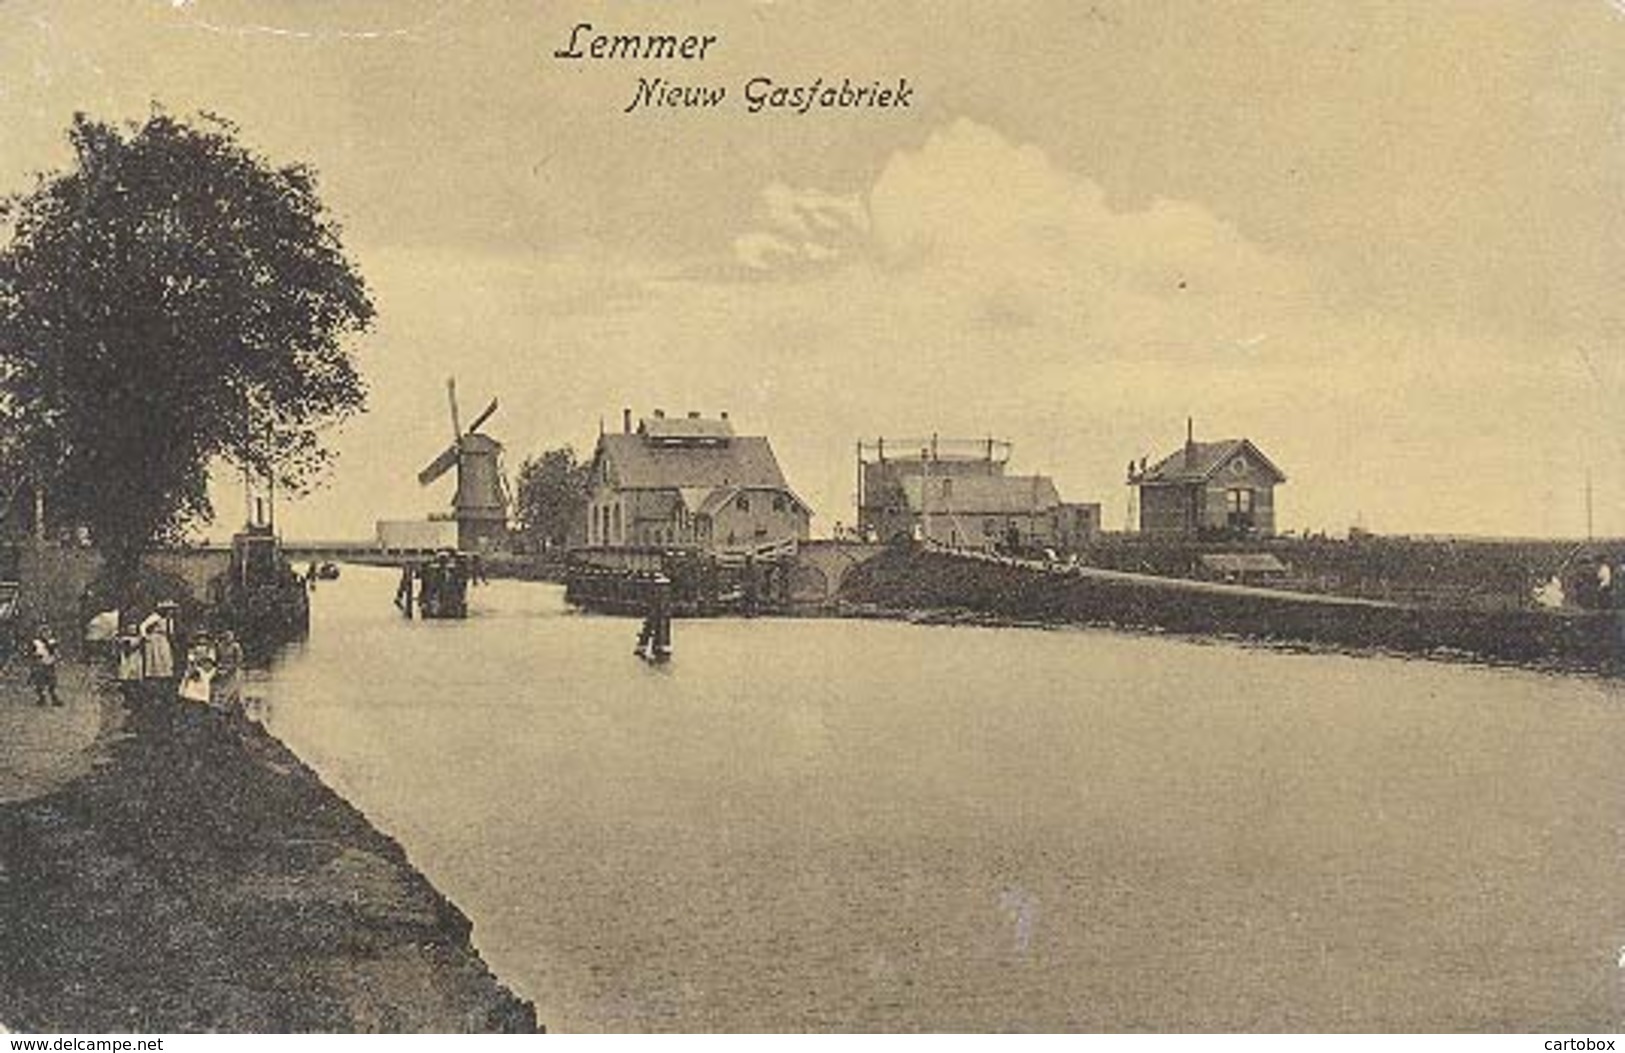 Lemmer, Nieuw Gasfabriek - Lemmer